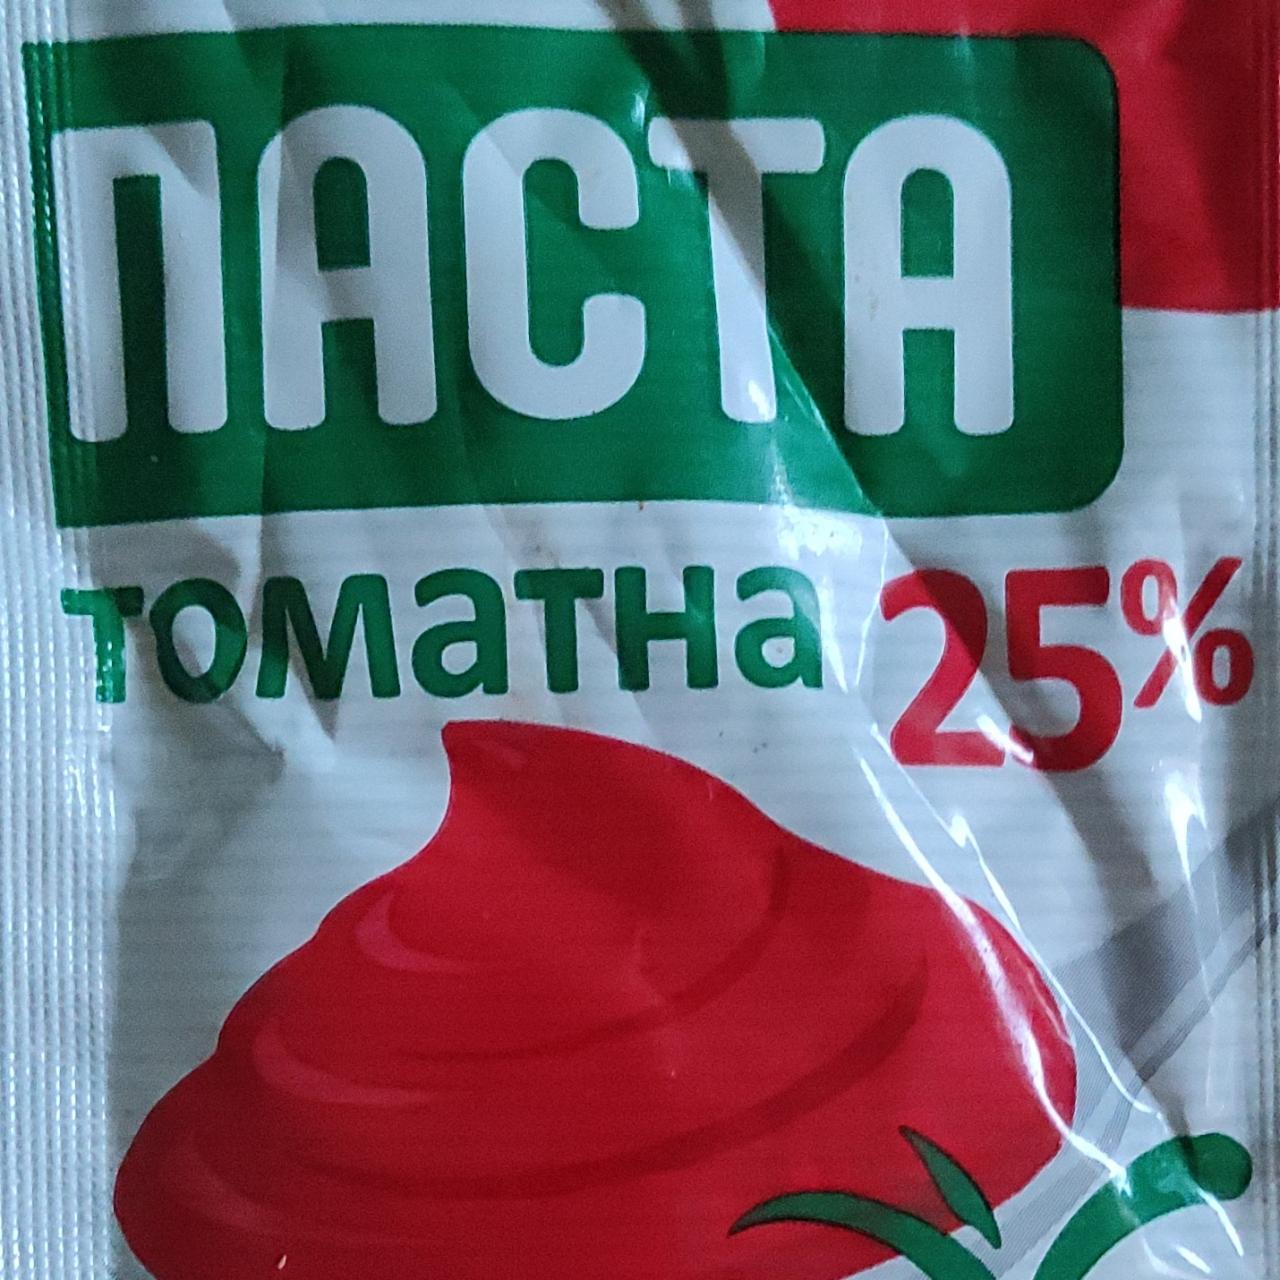 Фото - Паста томатна 25% Порада Посад